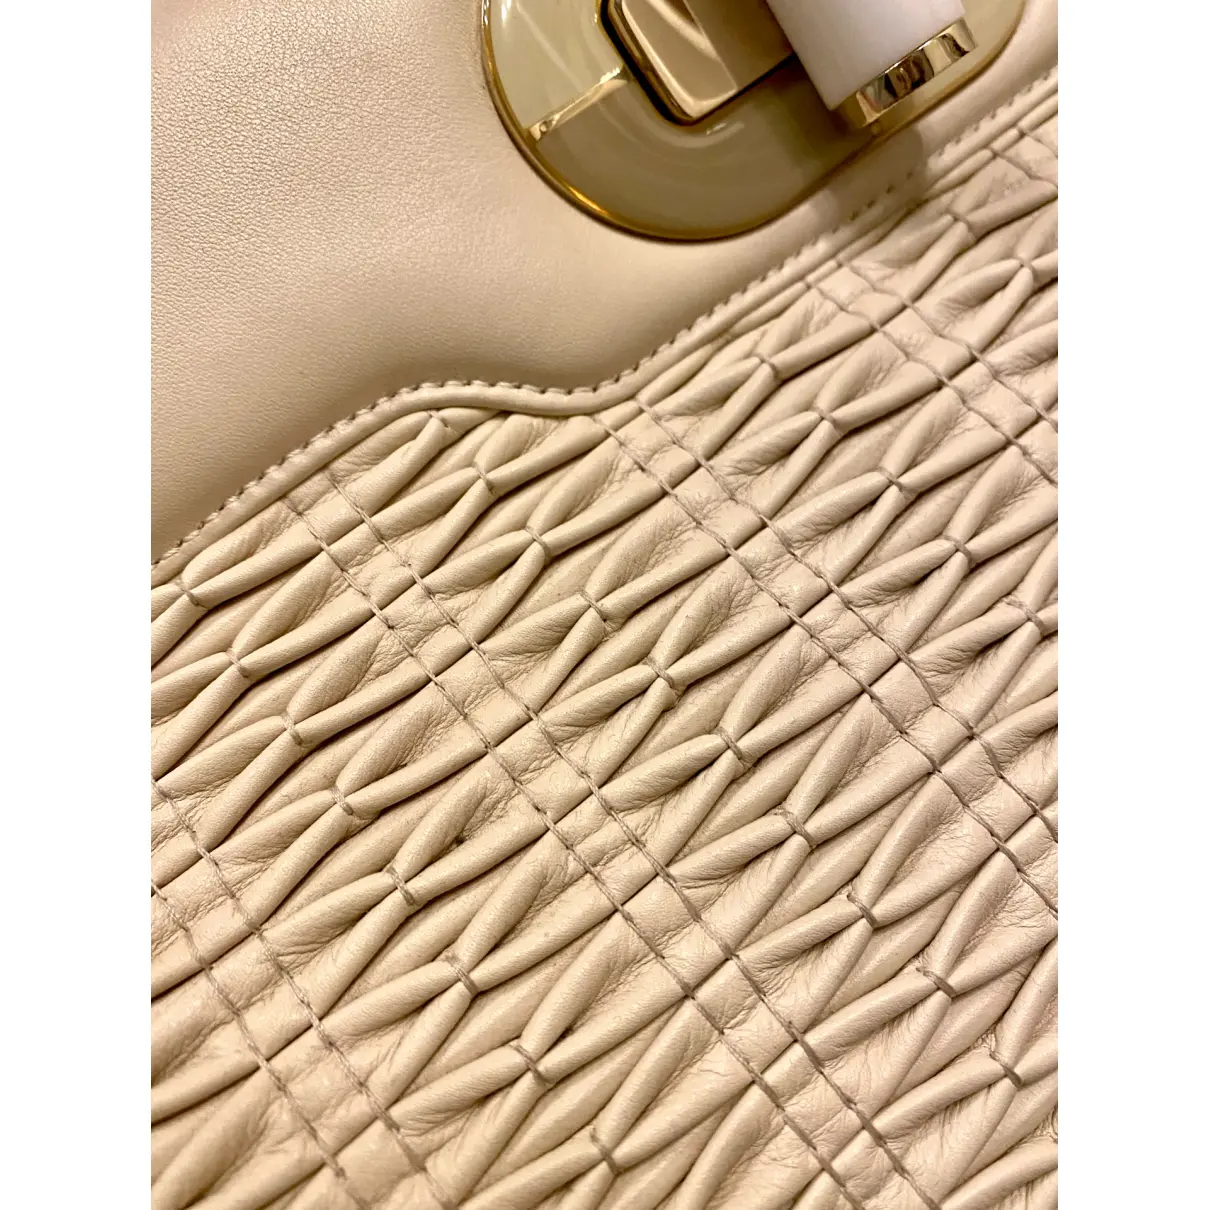 Isabella Rossellini leather handbag Bvlgari